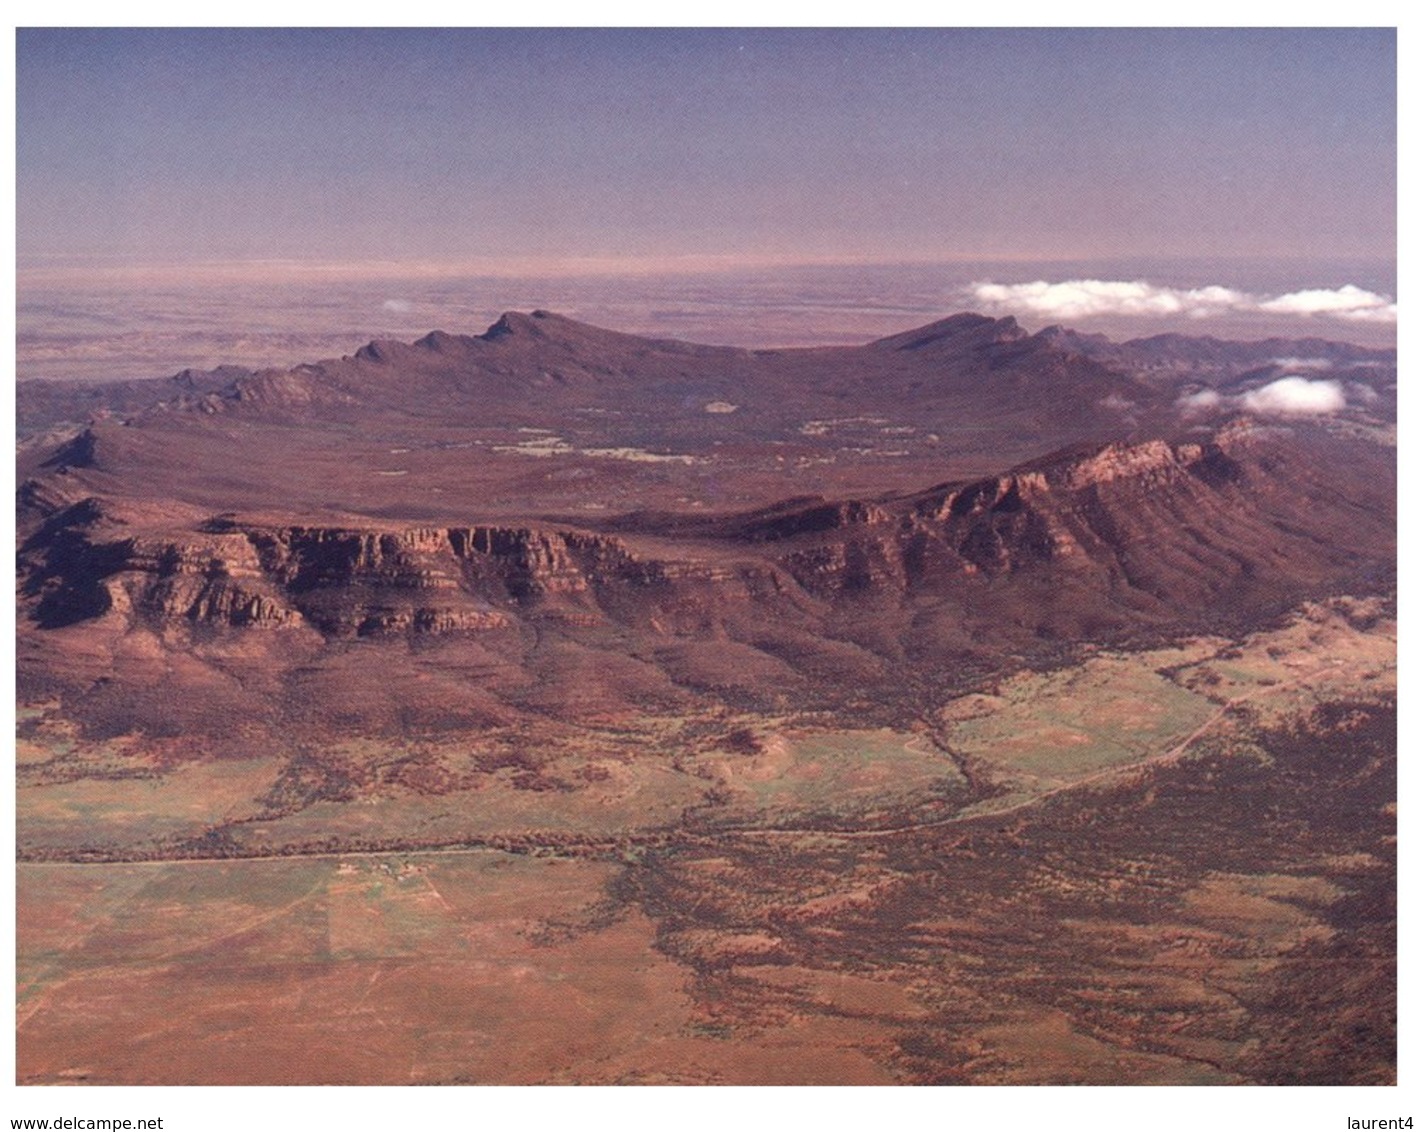 (444) Australia - SA - Flinders Ranges - Flinders Ranges